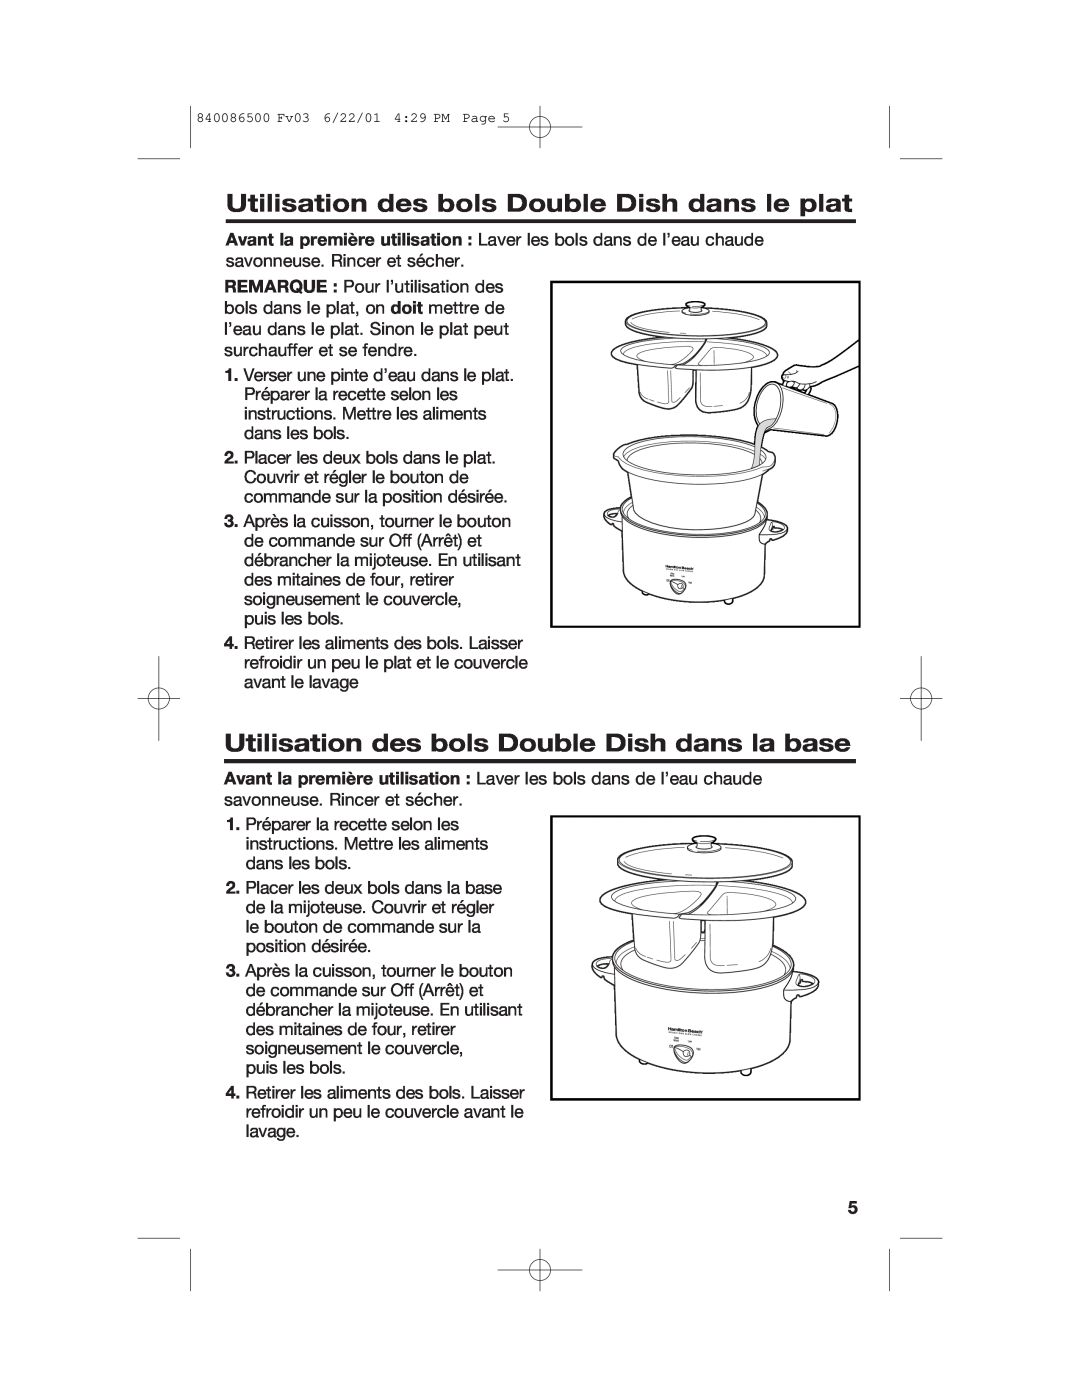 Hamilton Beach 33158 manual Utilisation des bols Double Dish dans le plat, Utilisation des bols Double Dish dans la base 